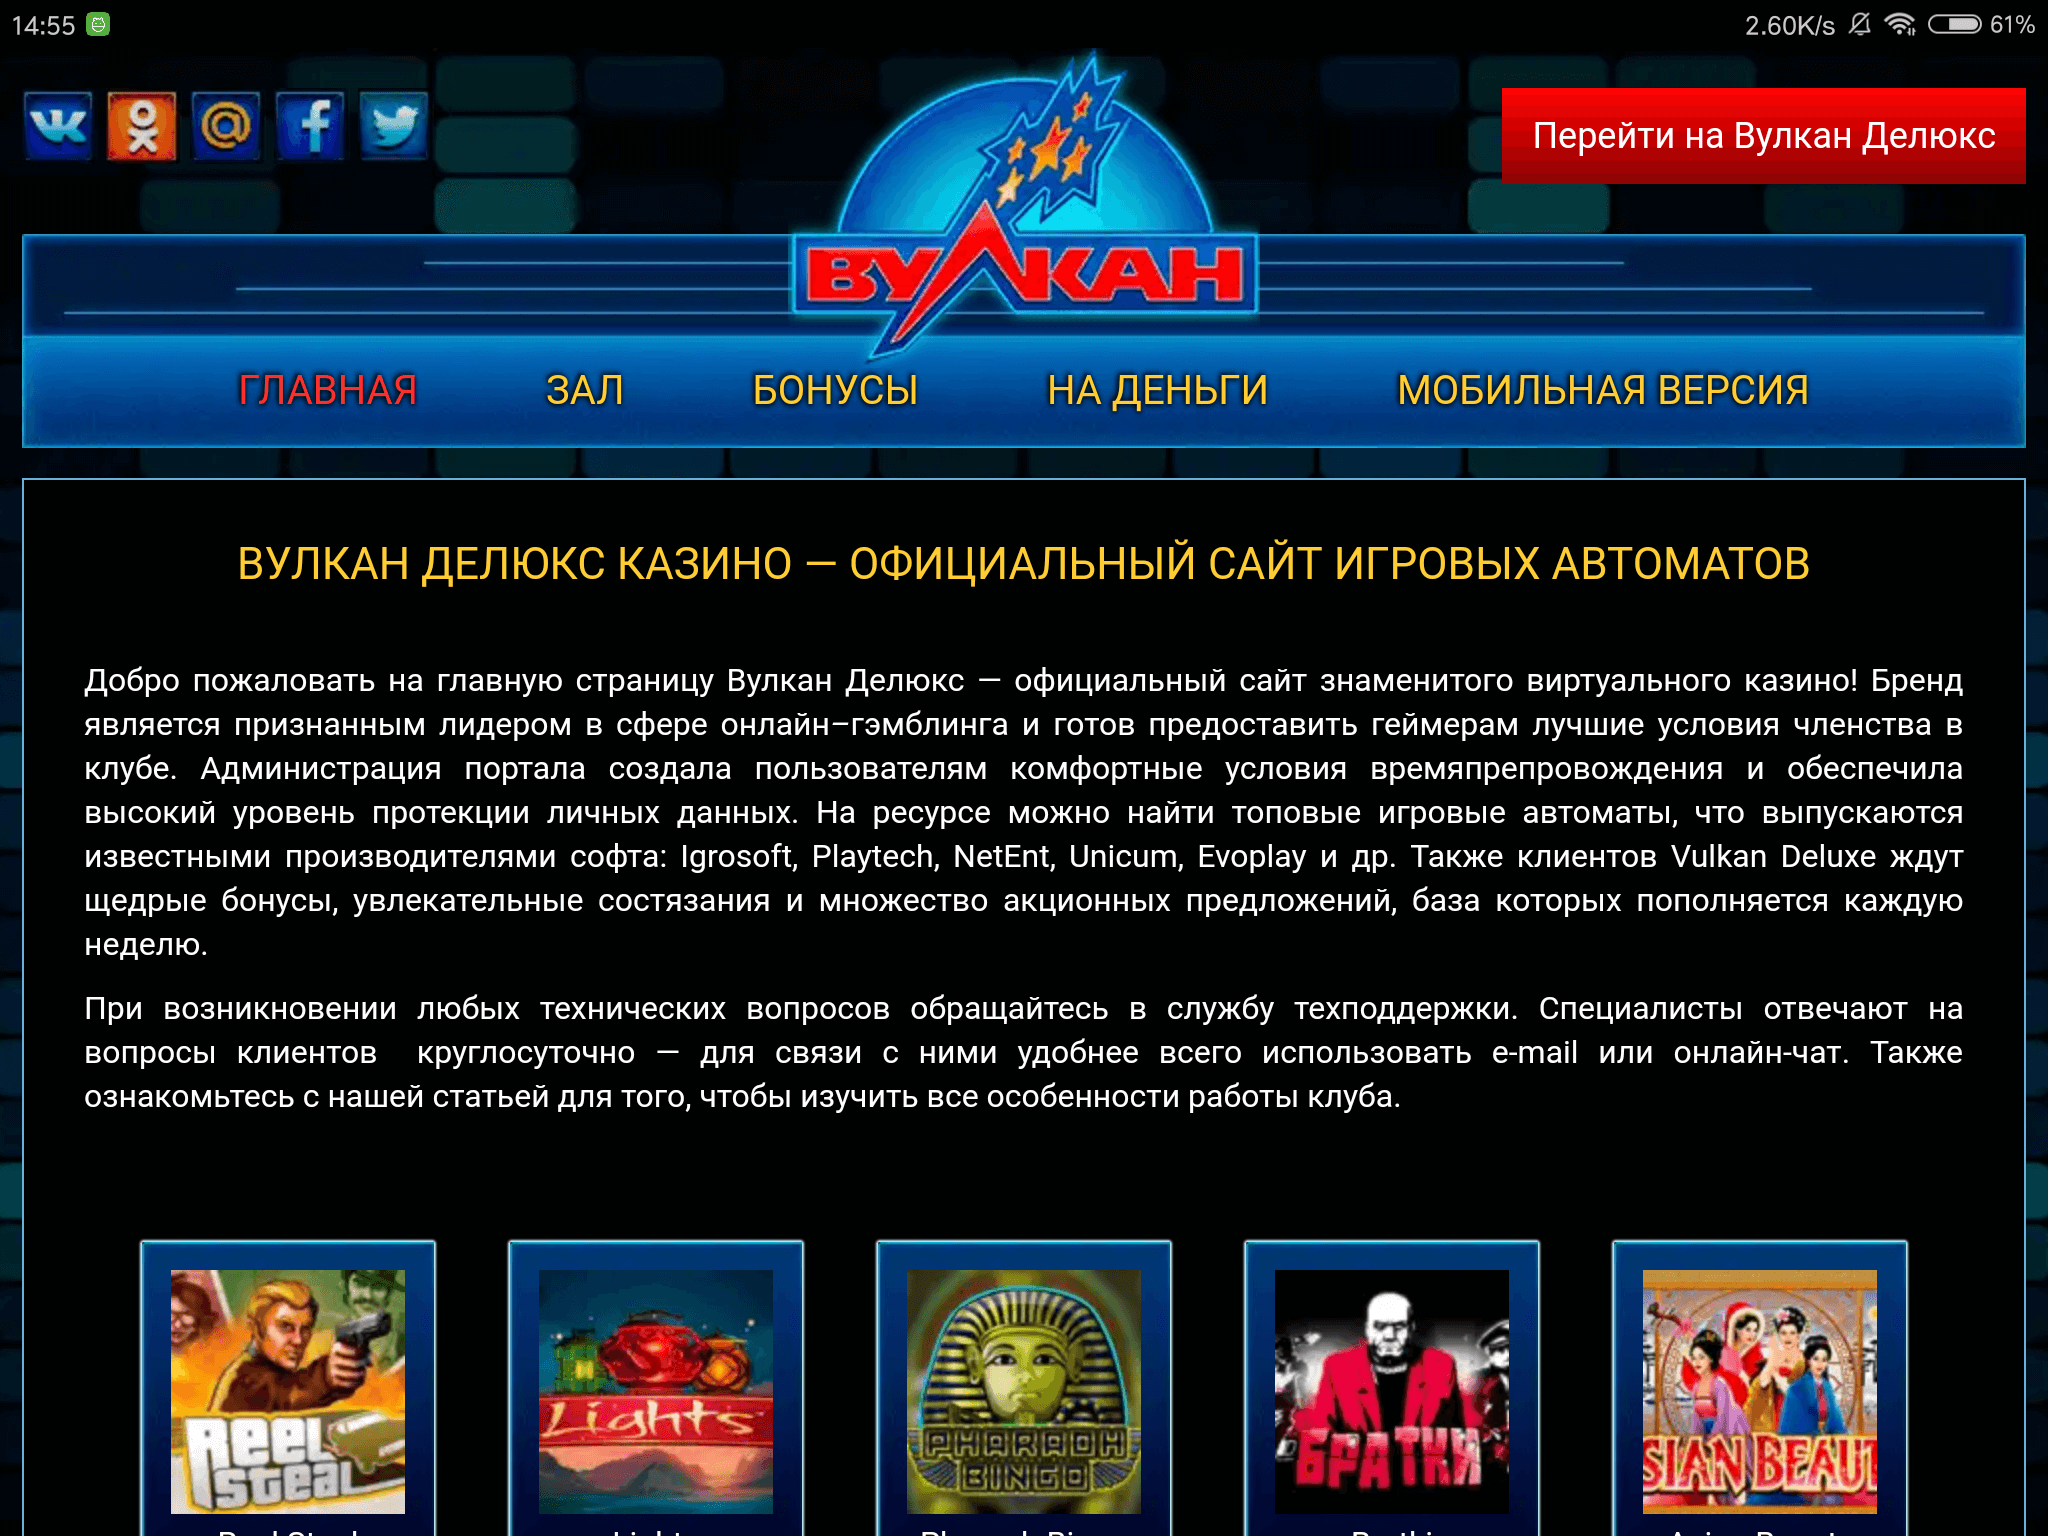 Вулкан deluxe игровые автоматы официальный сайт рублевое онлайн казино